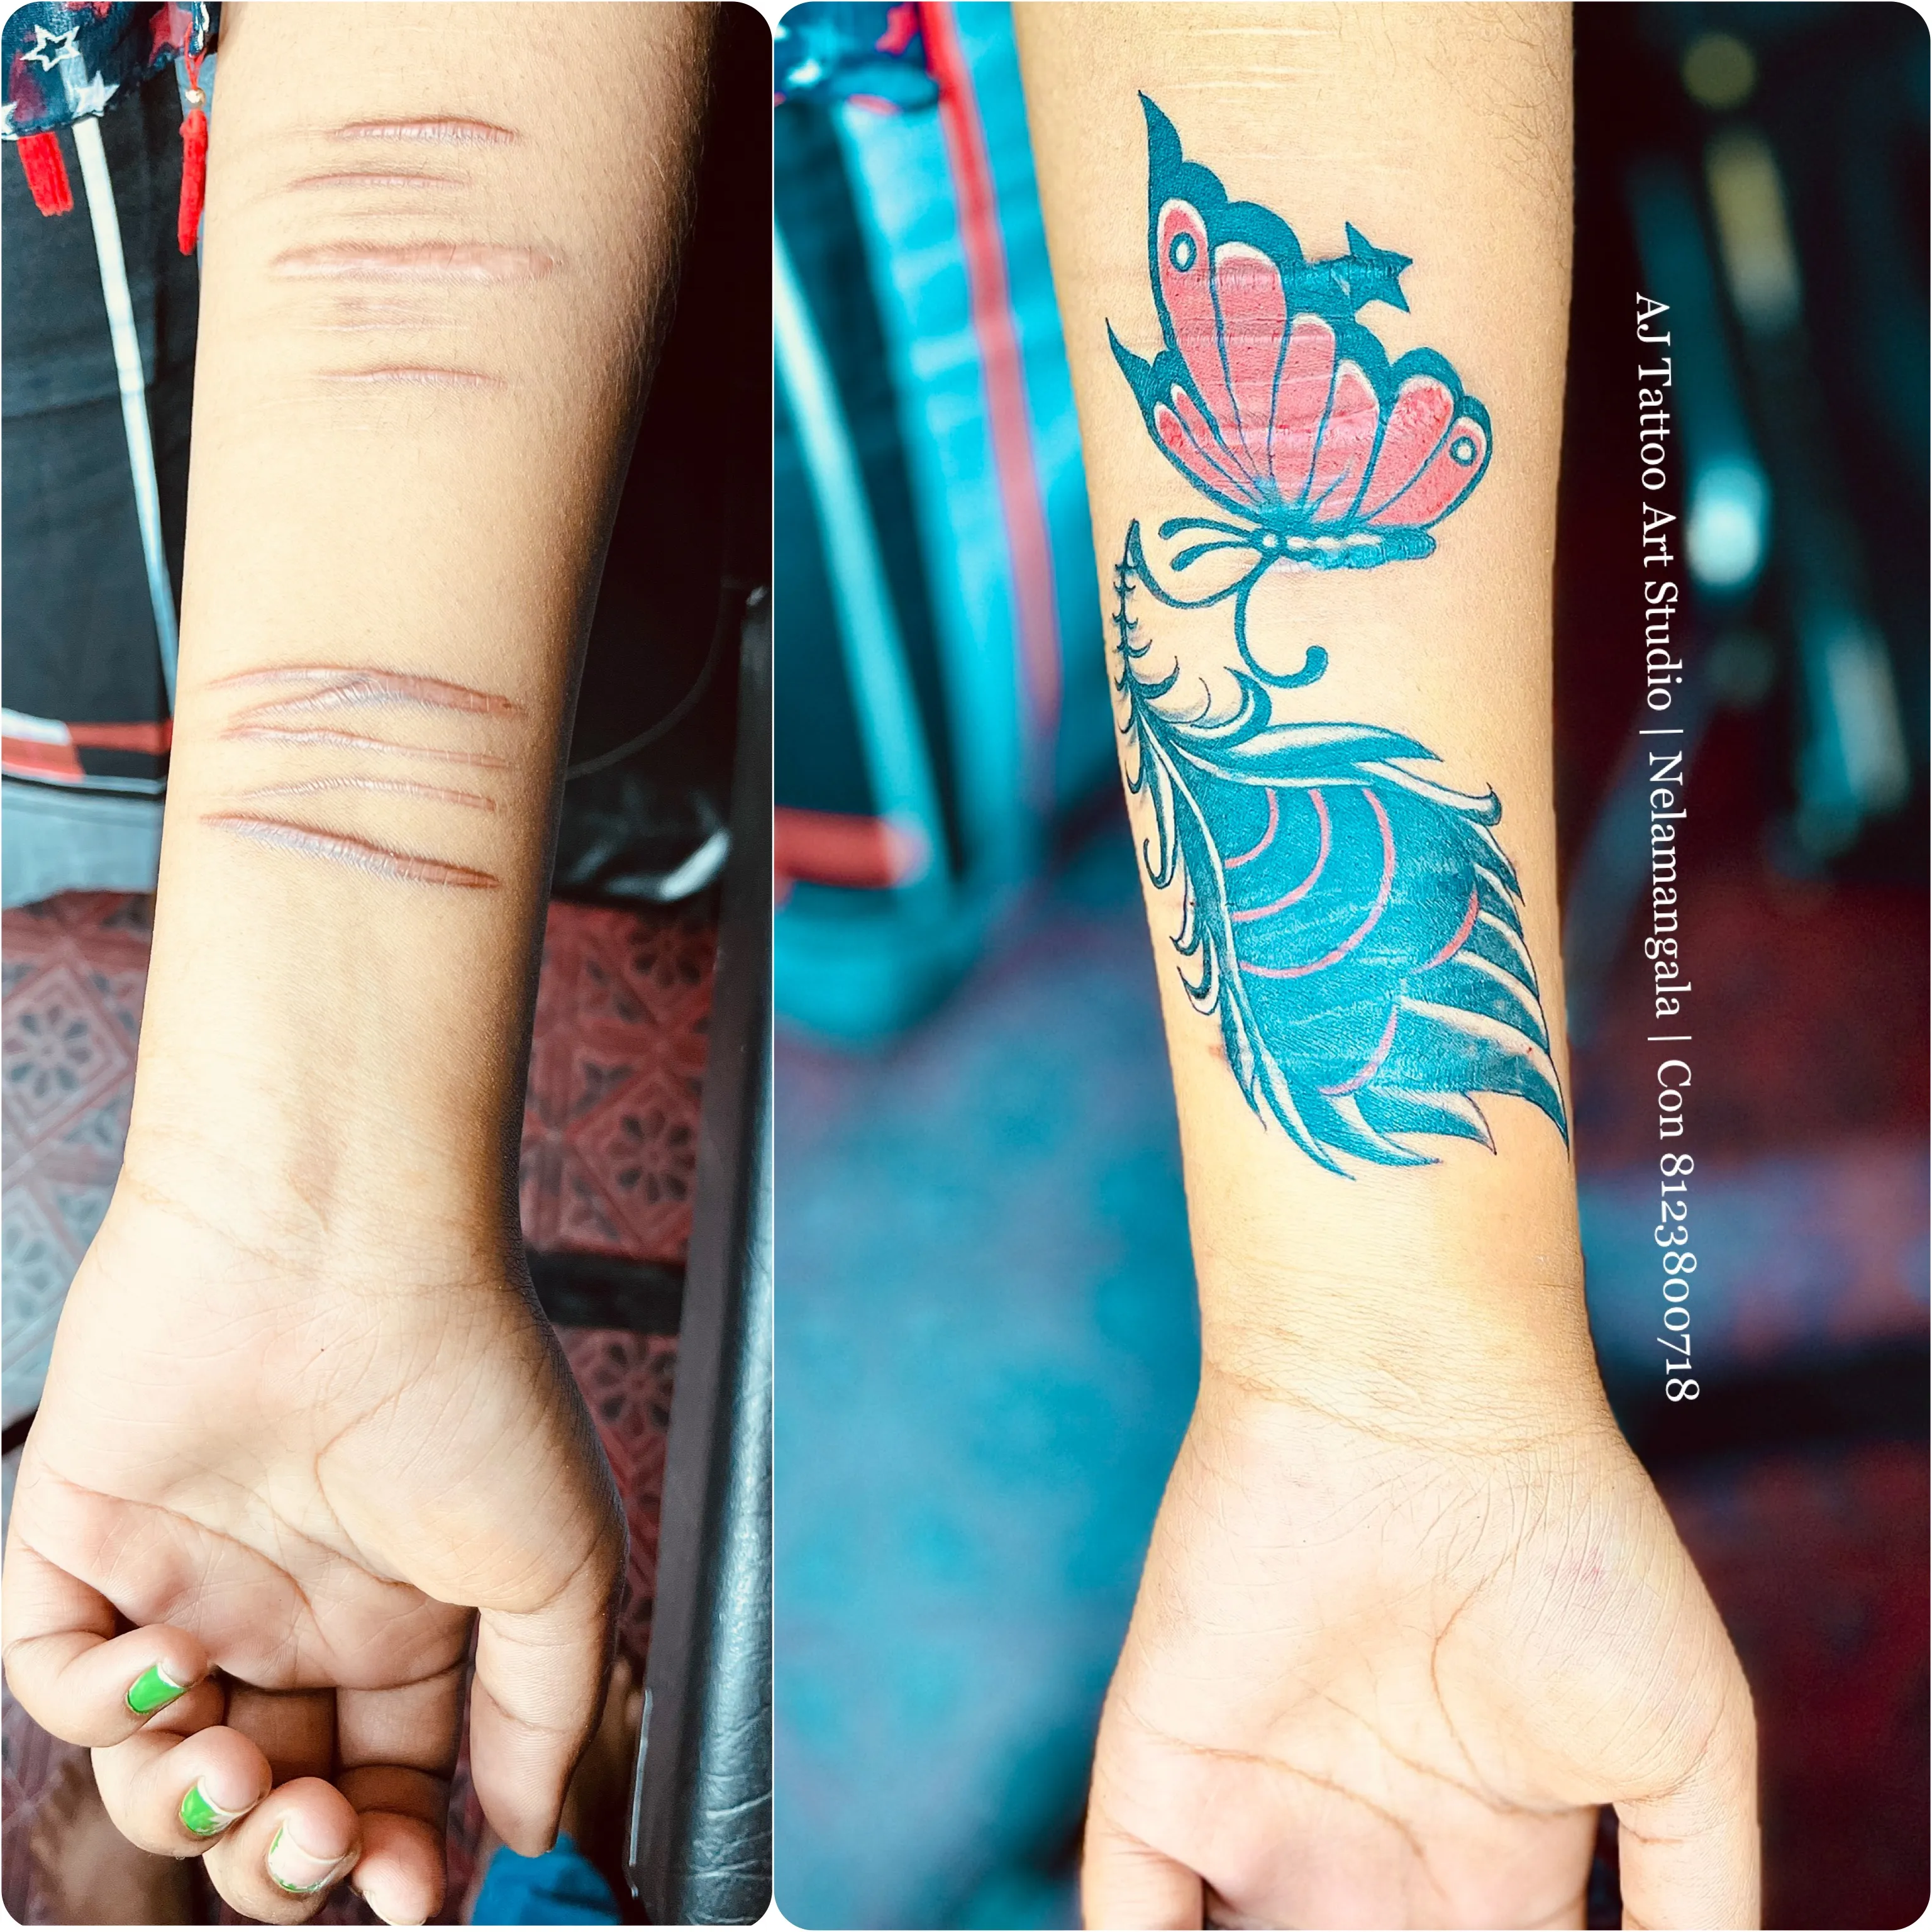 Aj Tattoos in Jalgaon MidcJalgaon  Best Tattoo Parlours in Jalgaon   Justdial